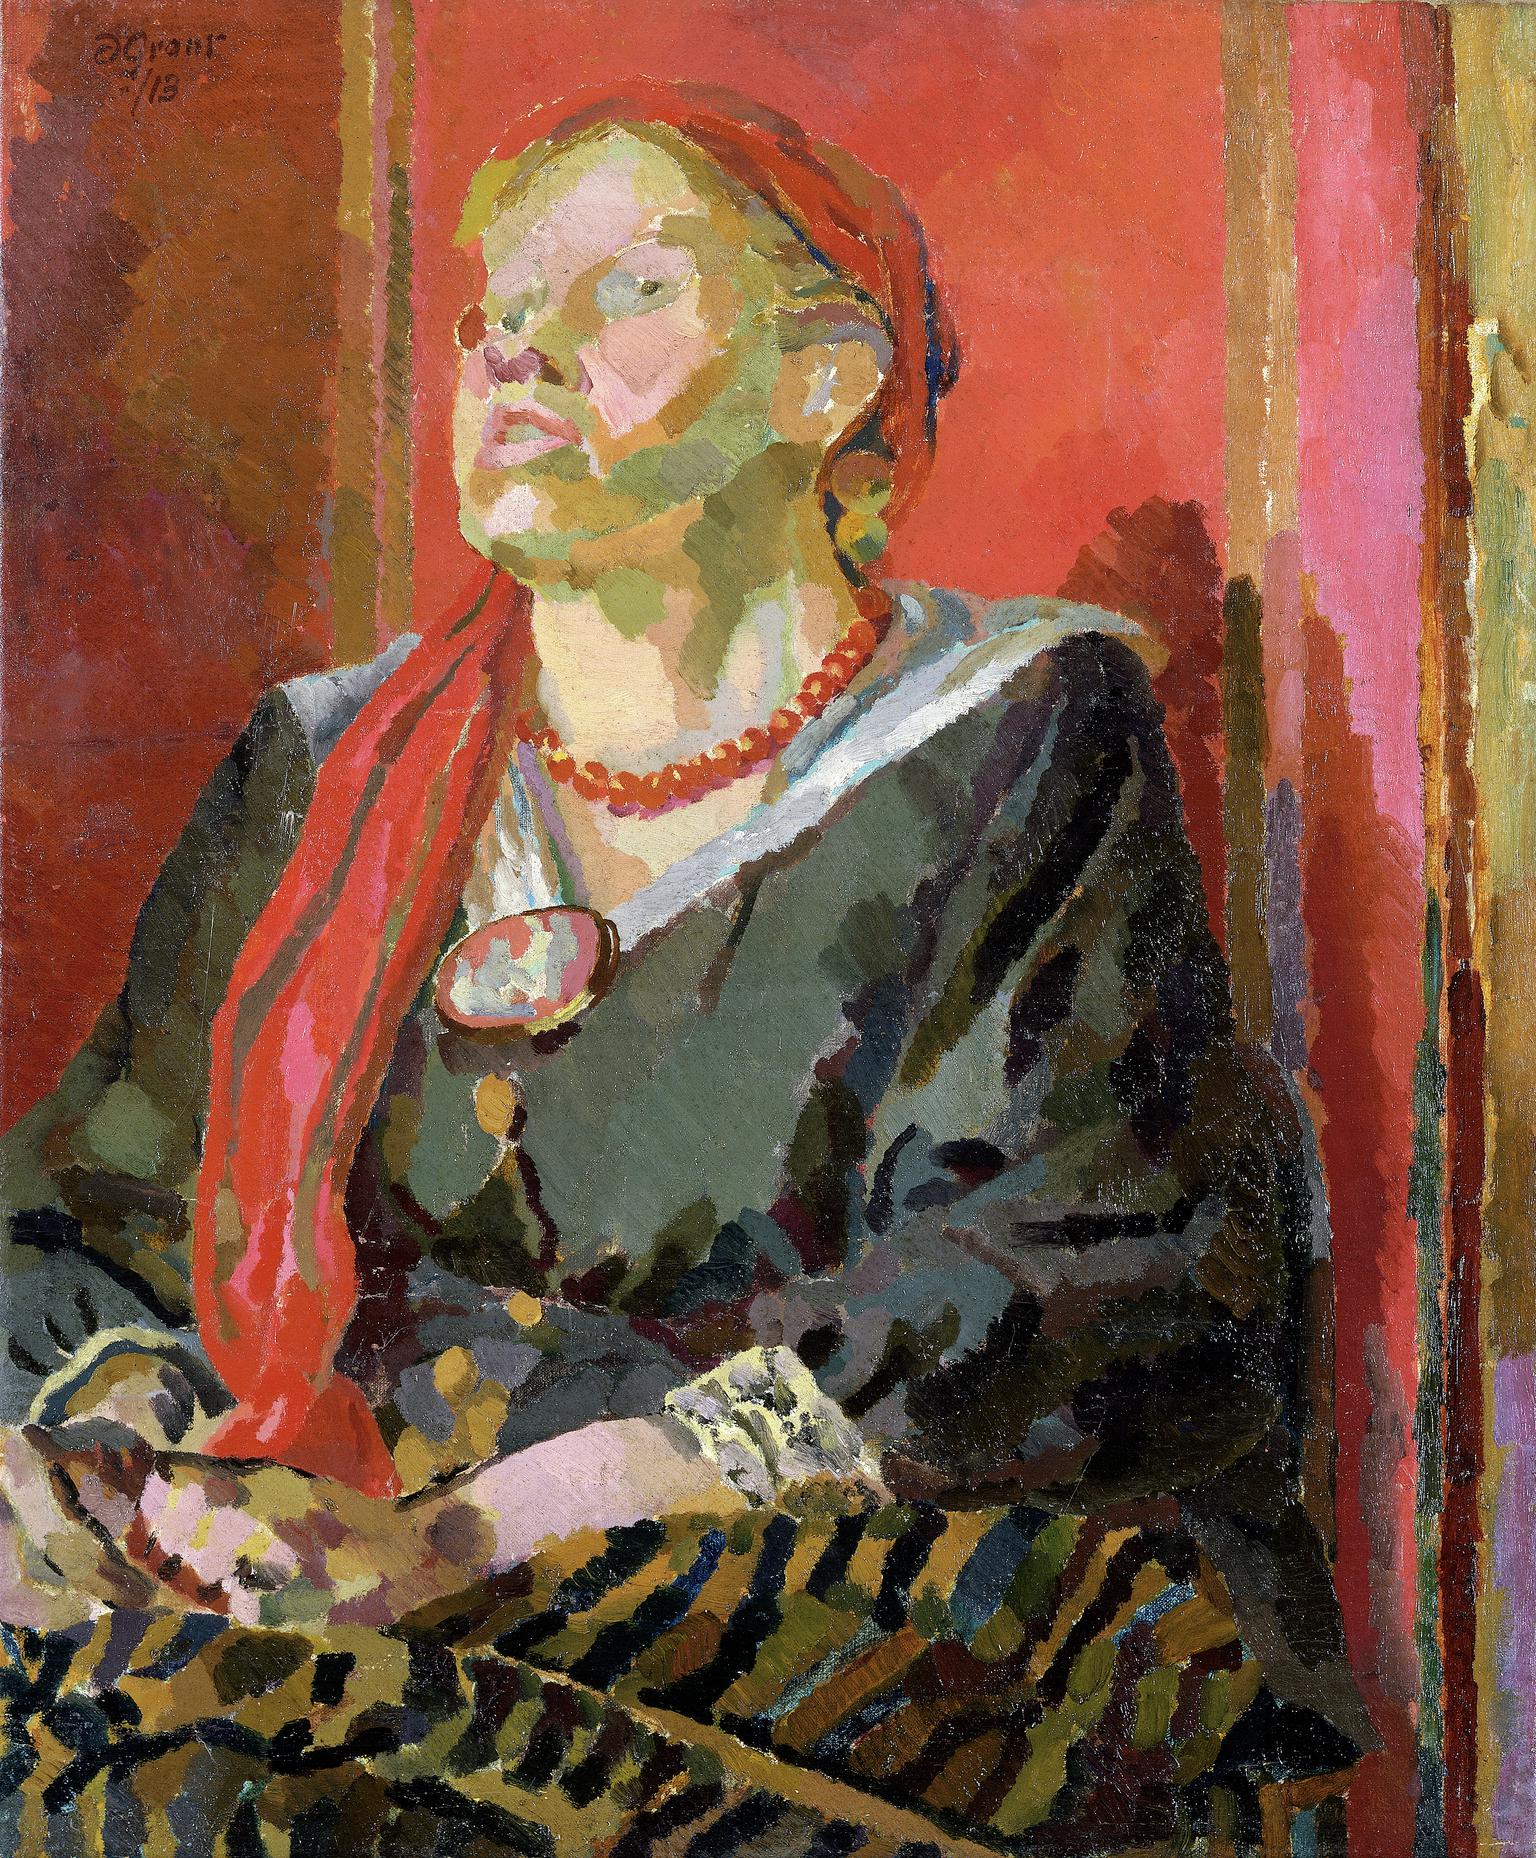 Katherine Cox (1887-1938)